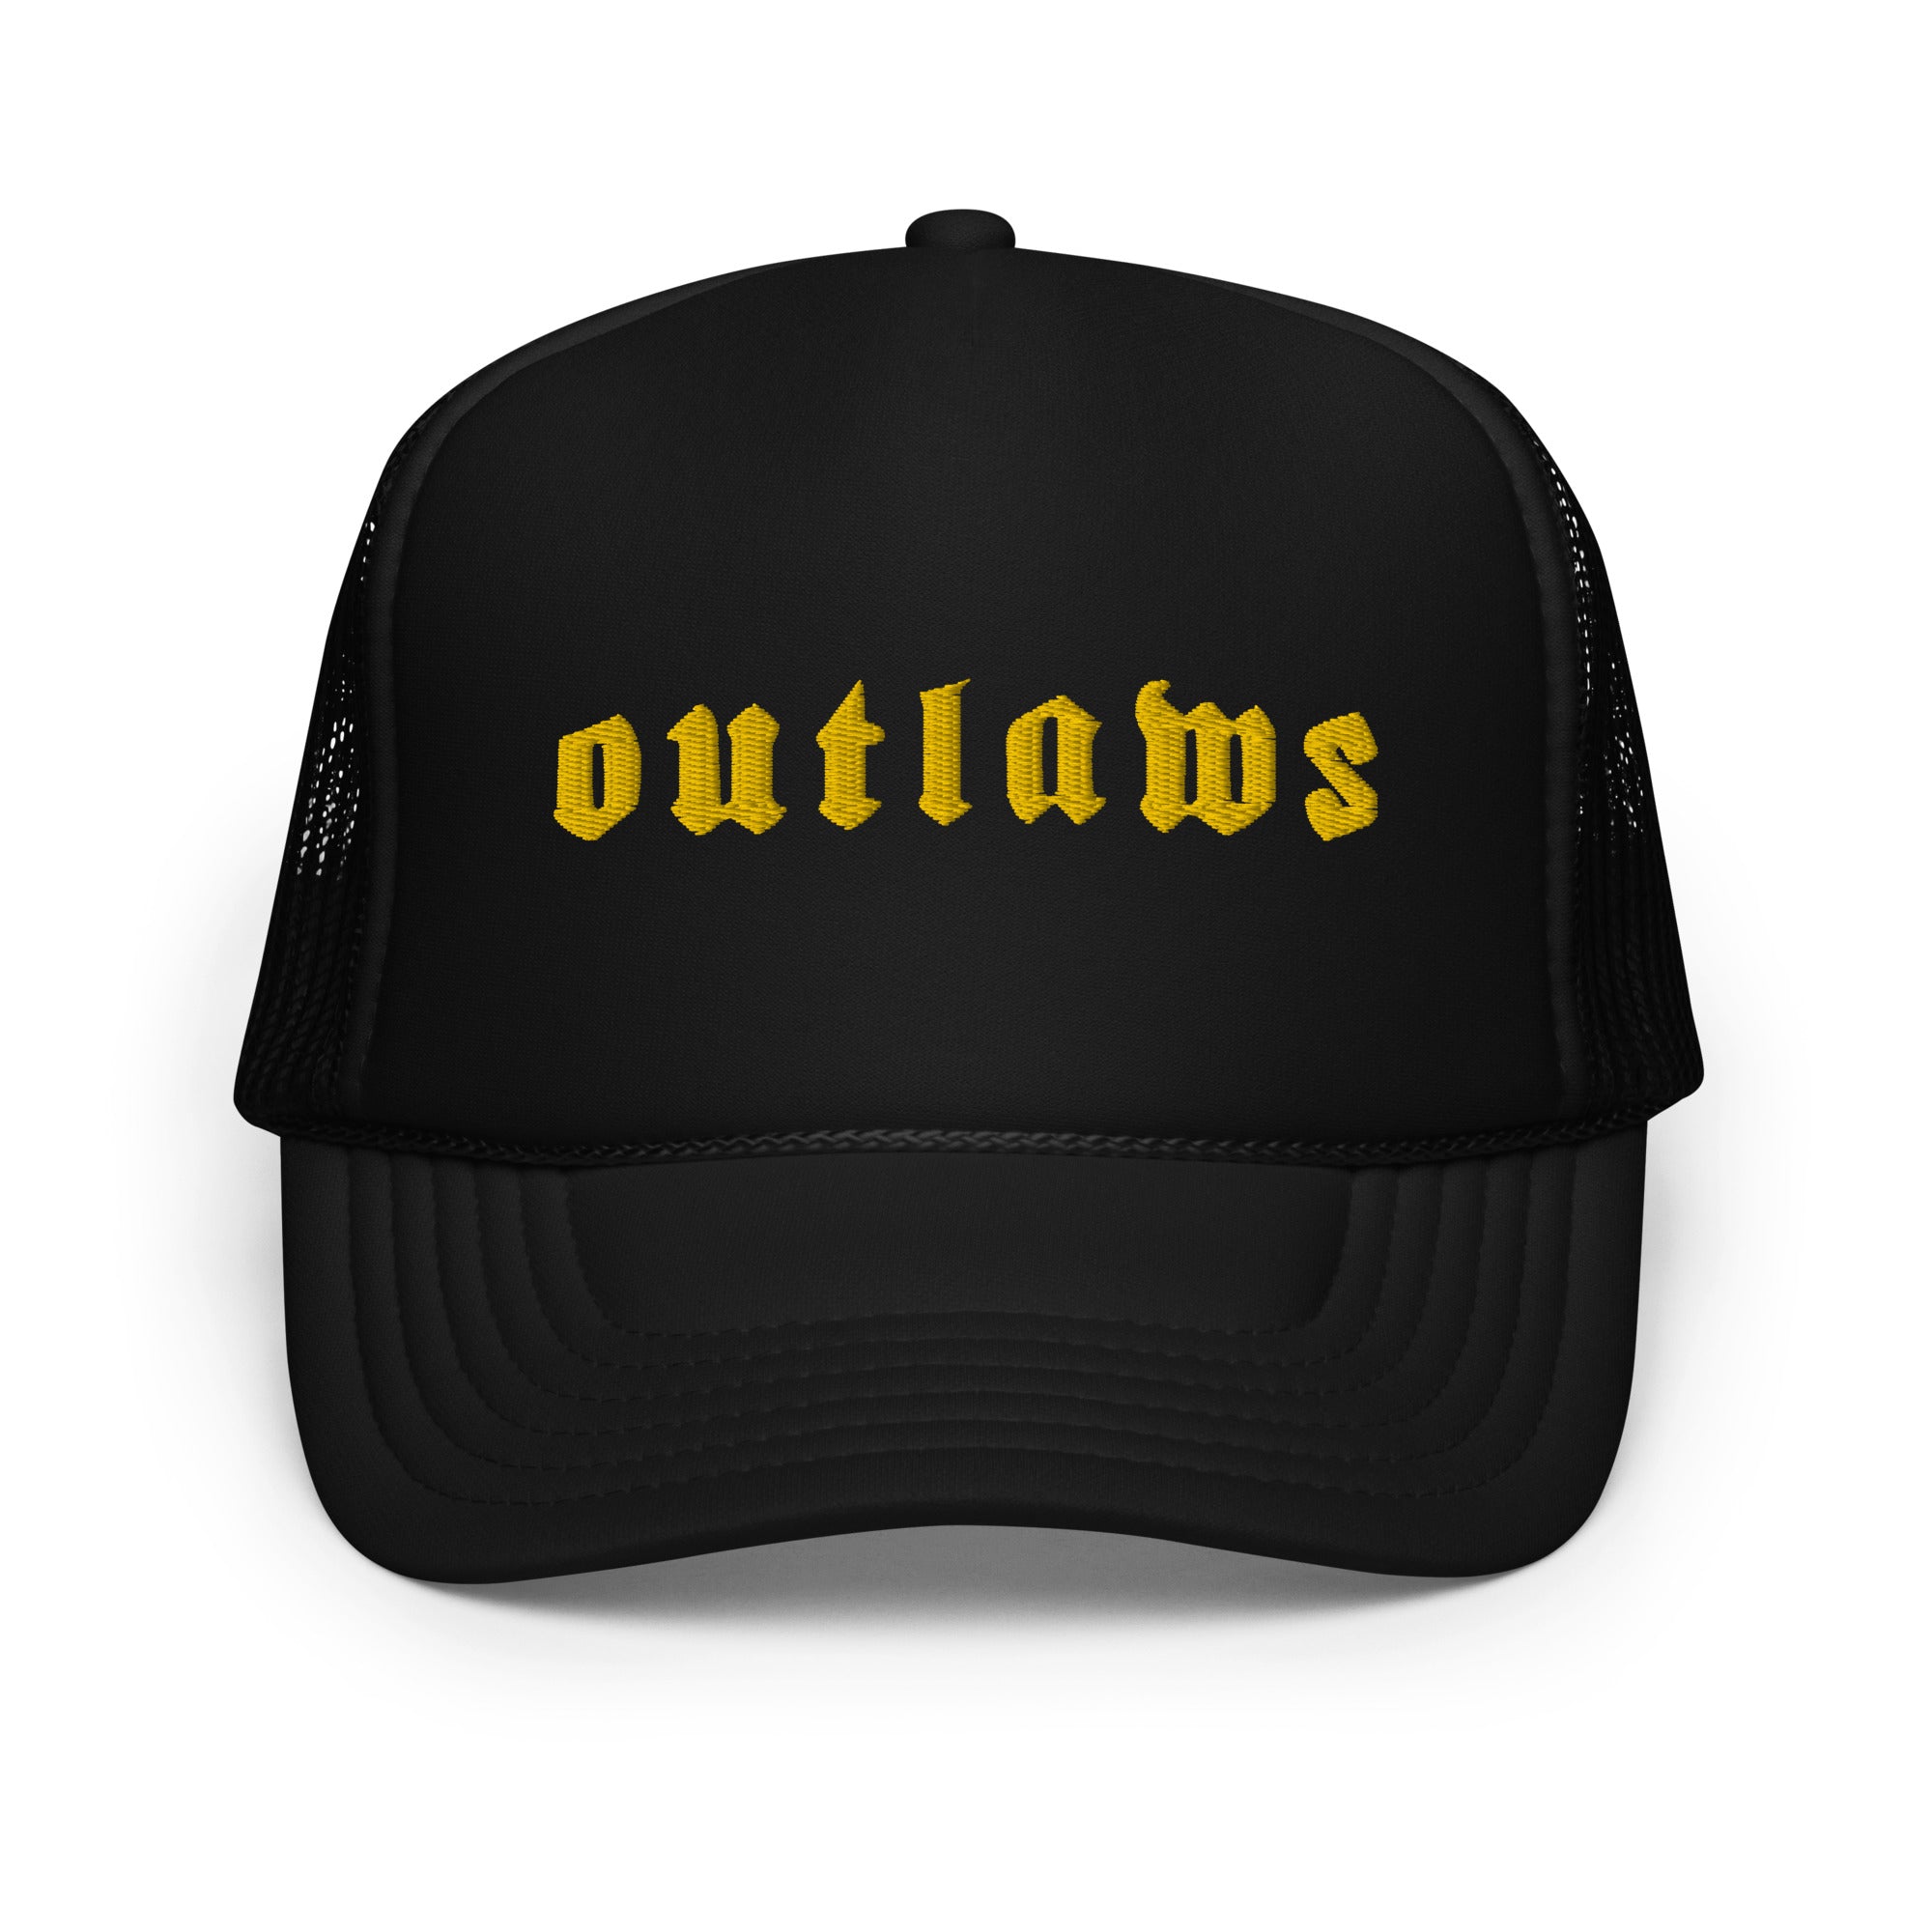 Outlaws Yellow Foam trucker hat